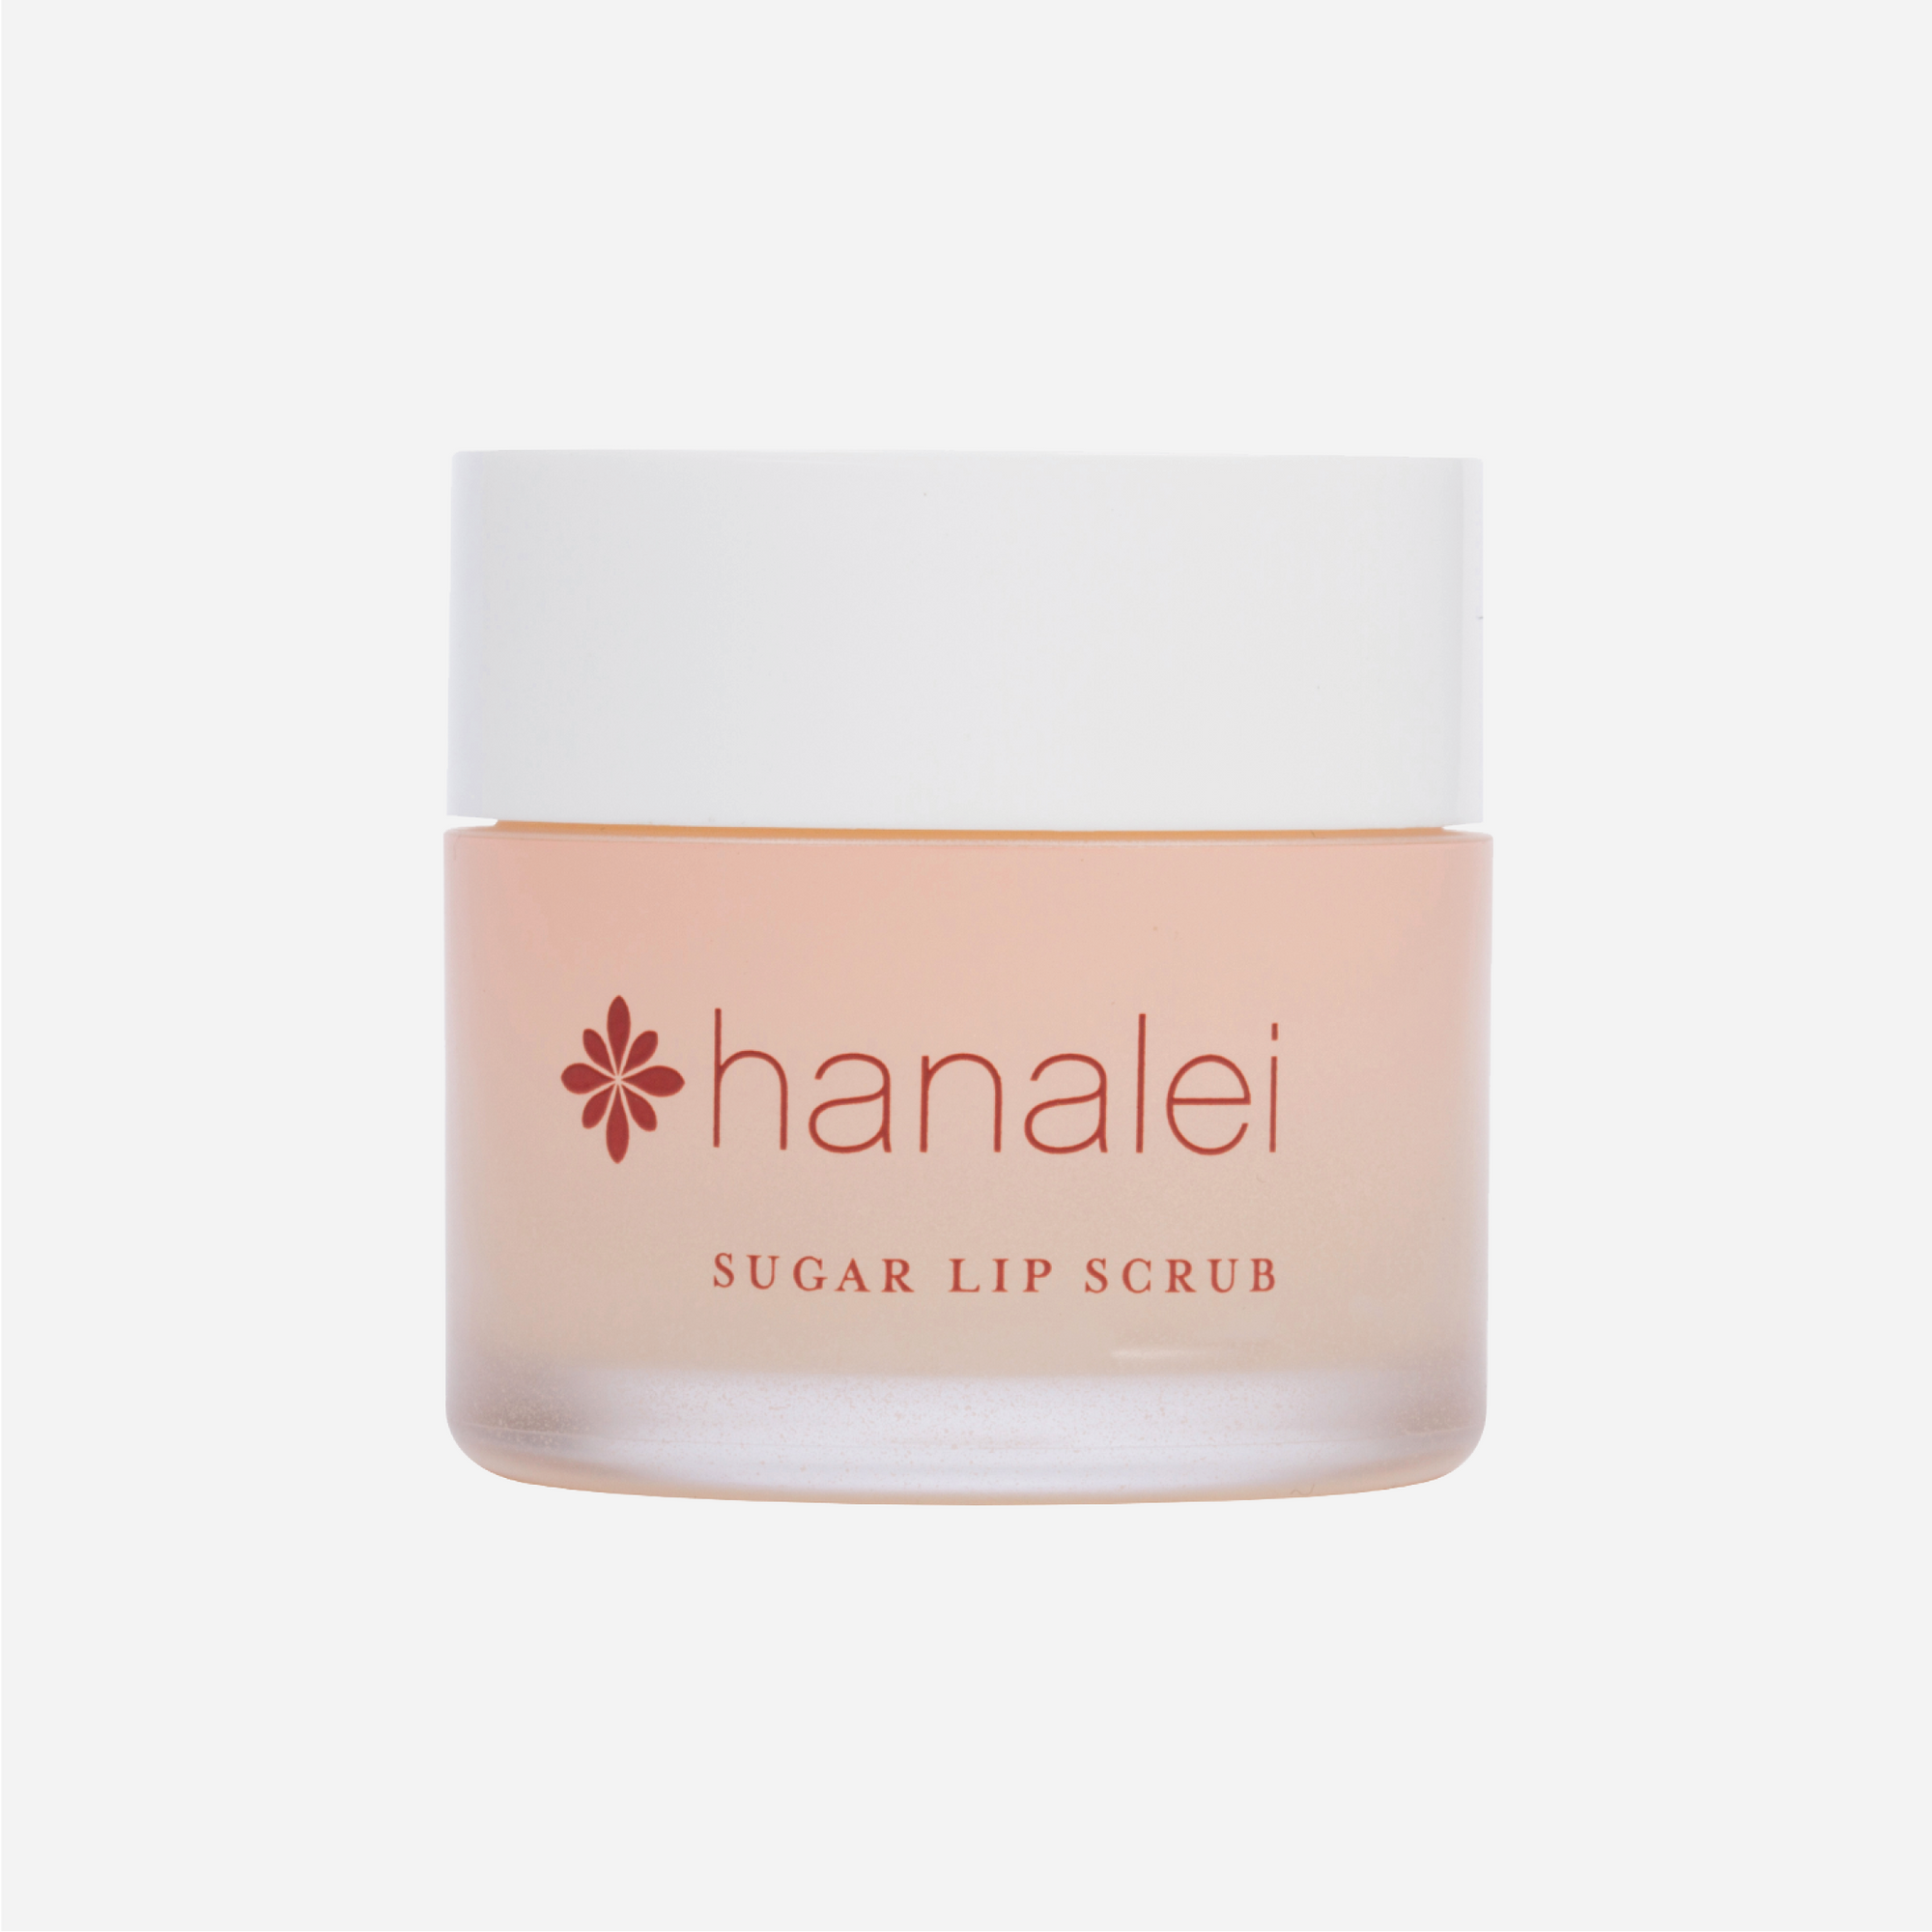 Hanalei Beauty Co. - Sugar Lip Scrub